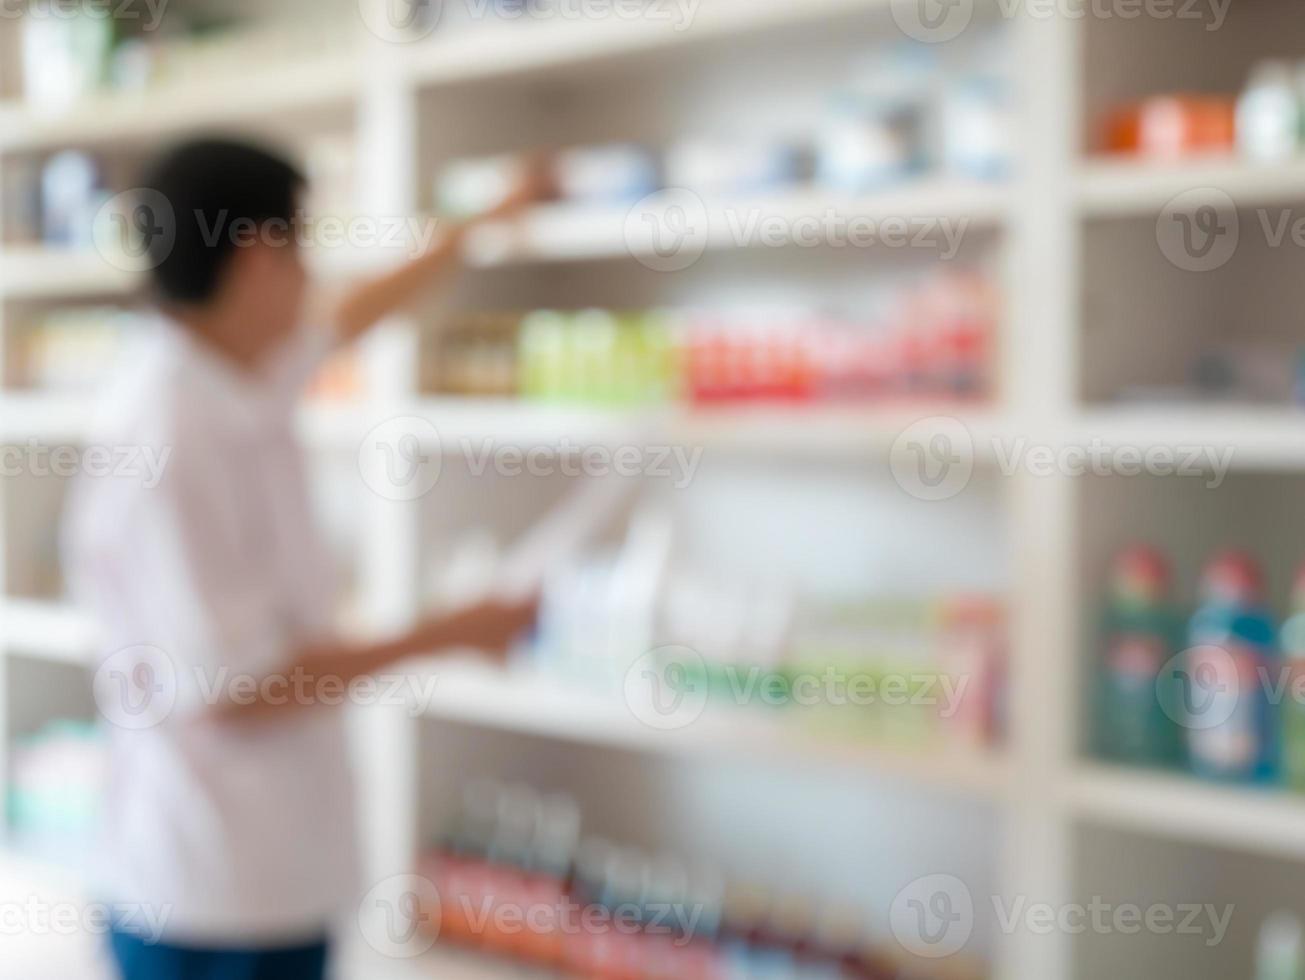 farmacista sfocato che prende la medicina dallo scaffale della farmacia foto